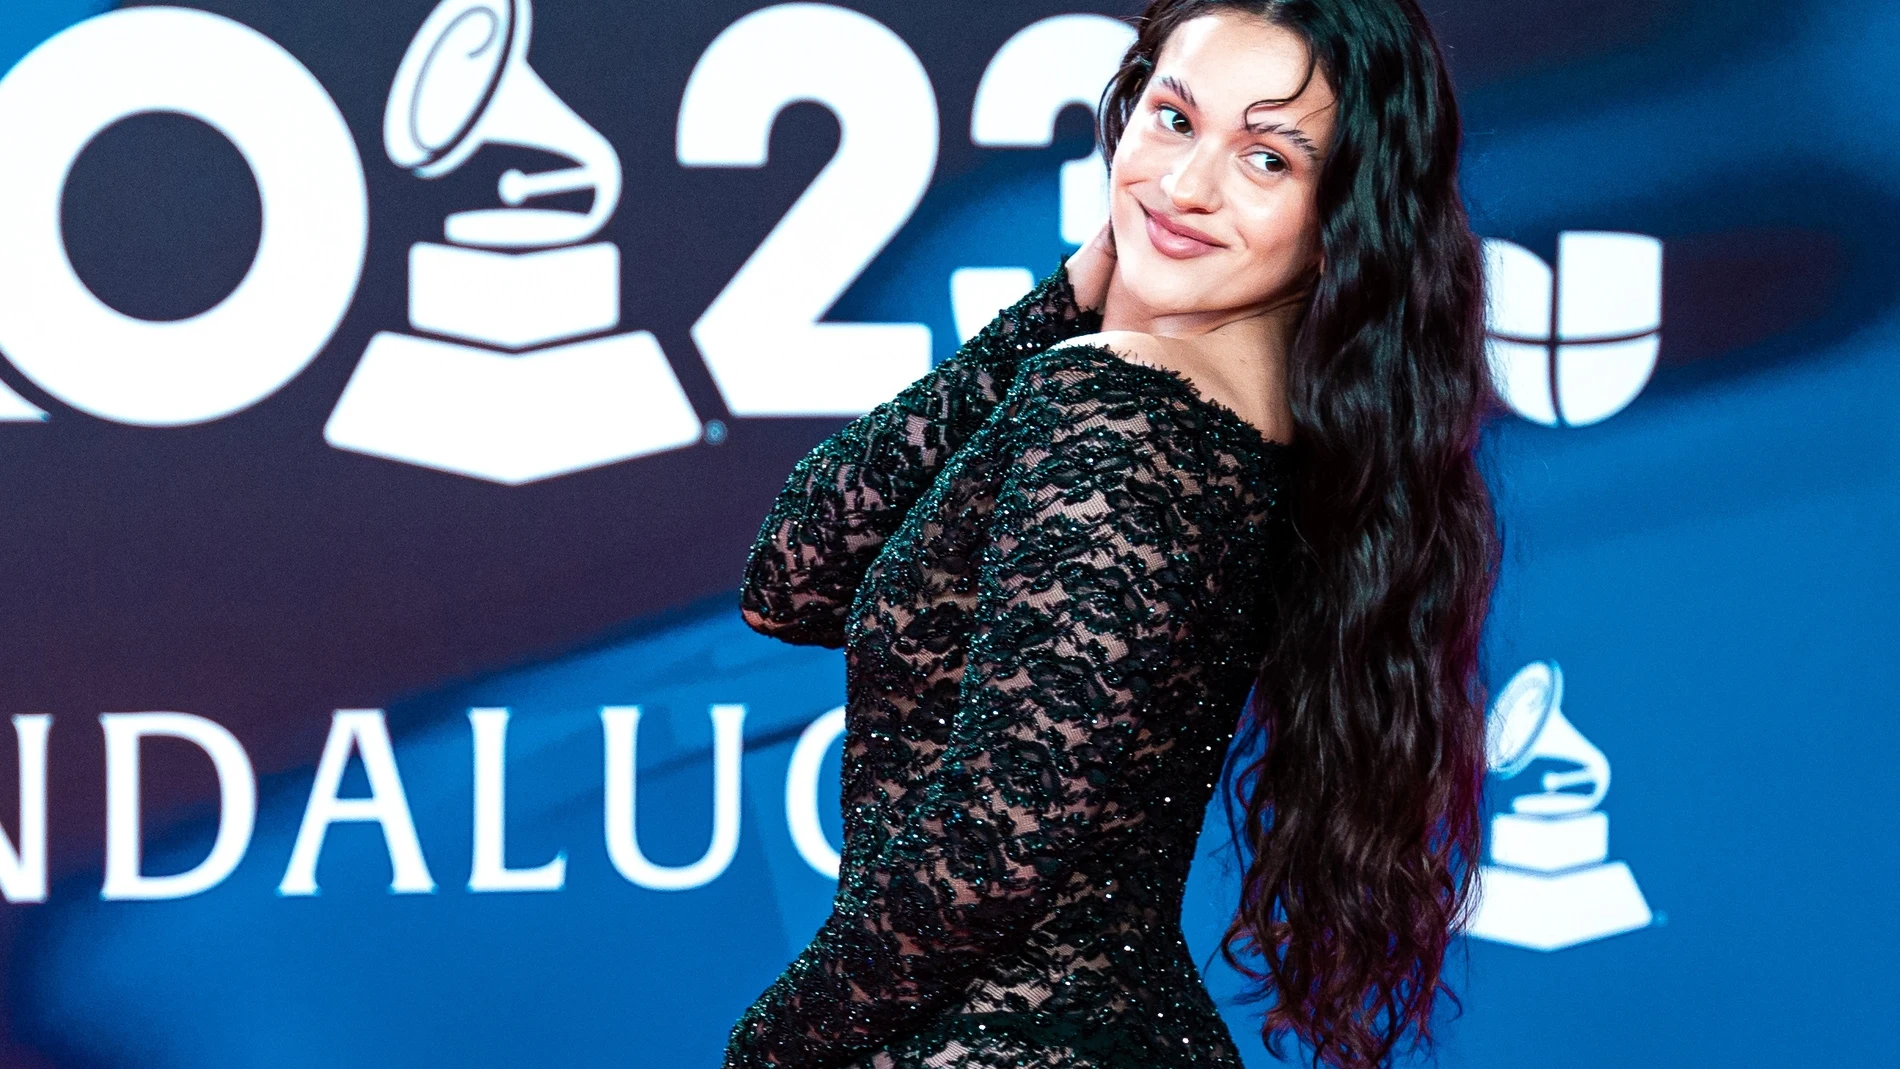 La gala de los Latin Grammy logra un 21,5% de cuota de pantalla en La 1 de TVE y 1.990.000 espectadores